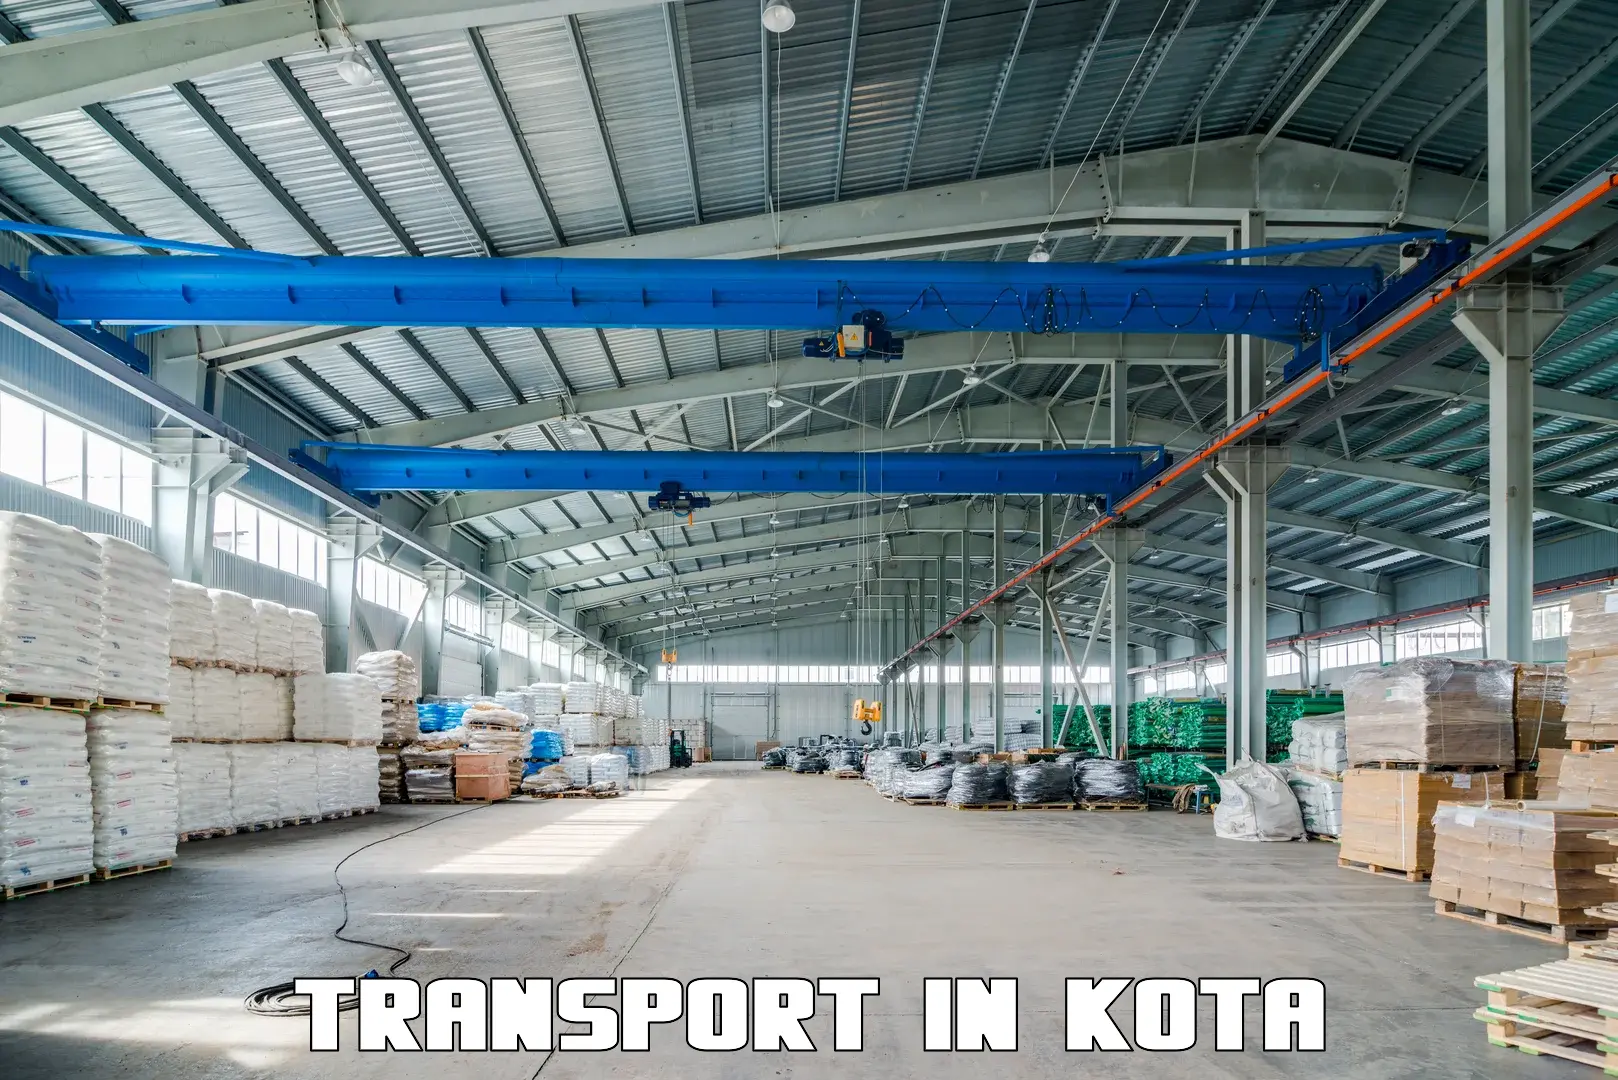 Transport in sharing in Kota